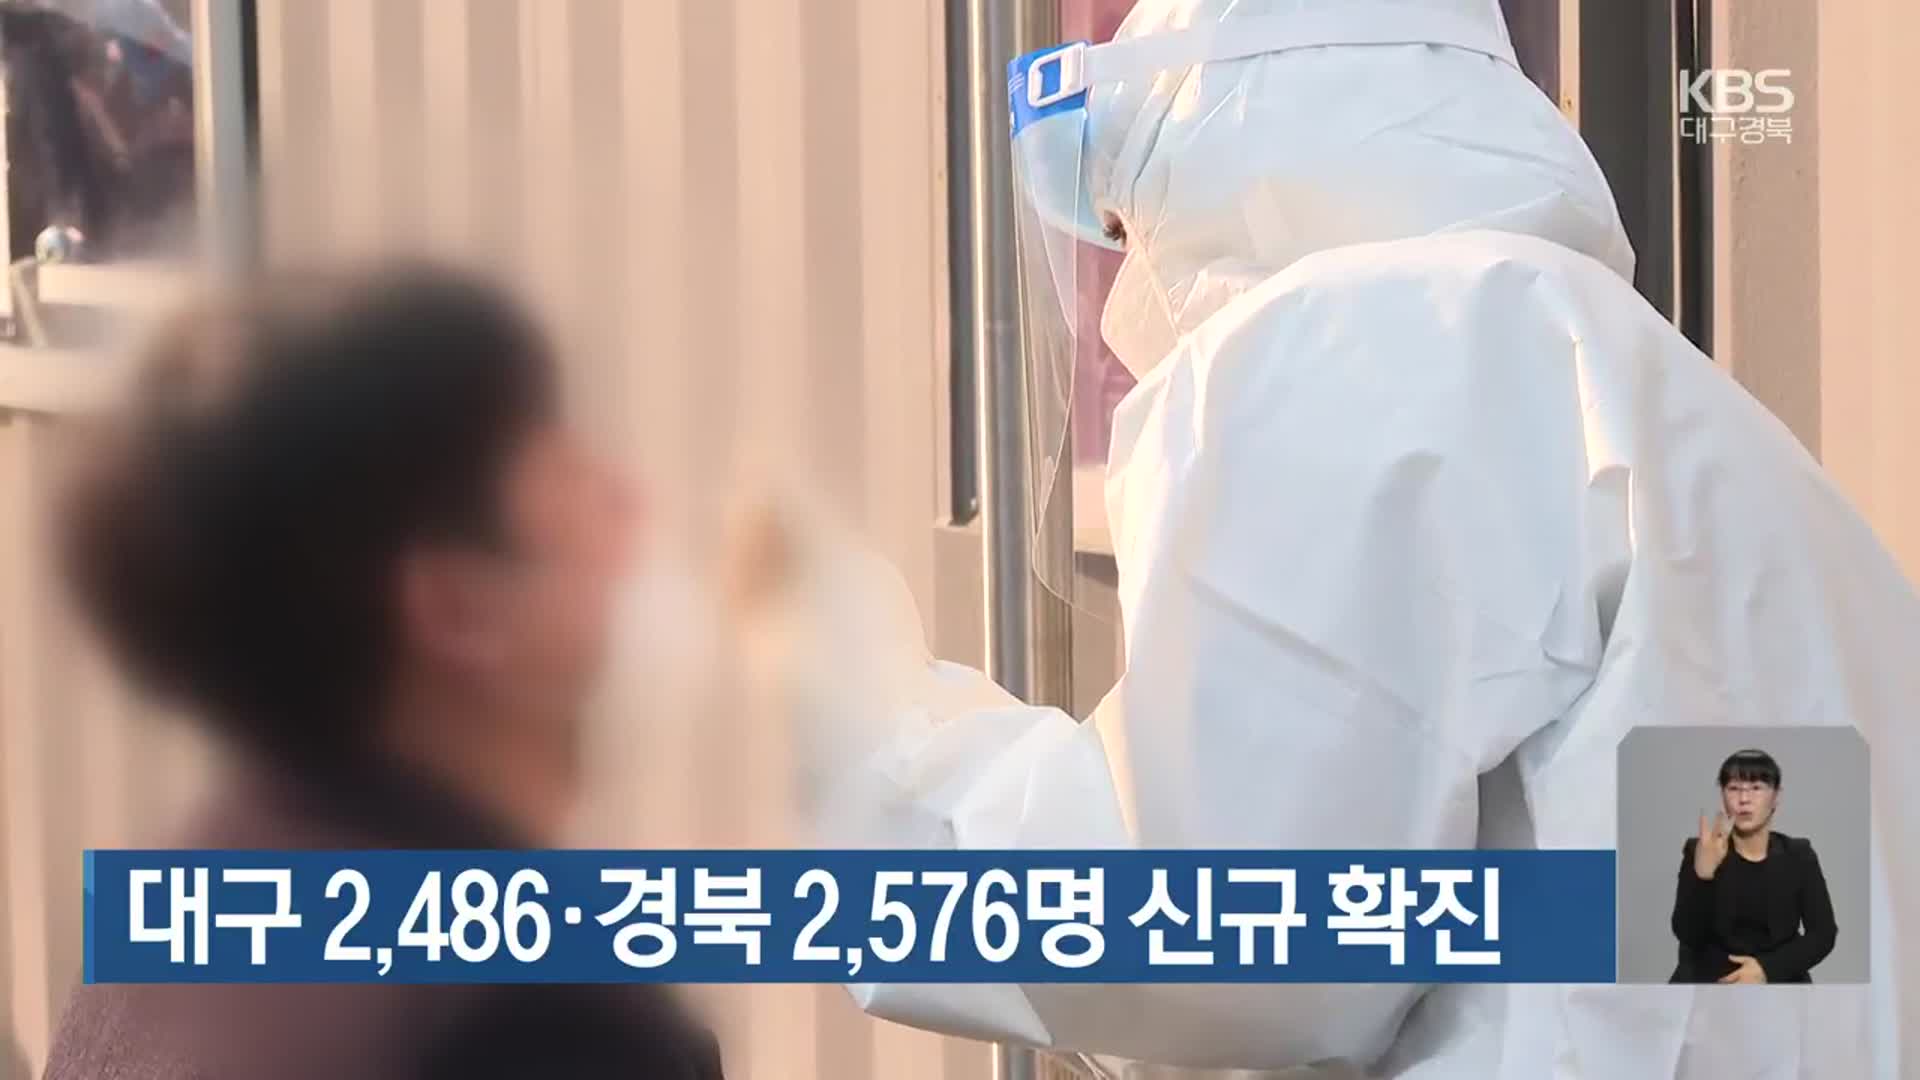 대구 2,486명·경북 2,576명 신규 확진 